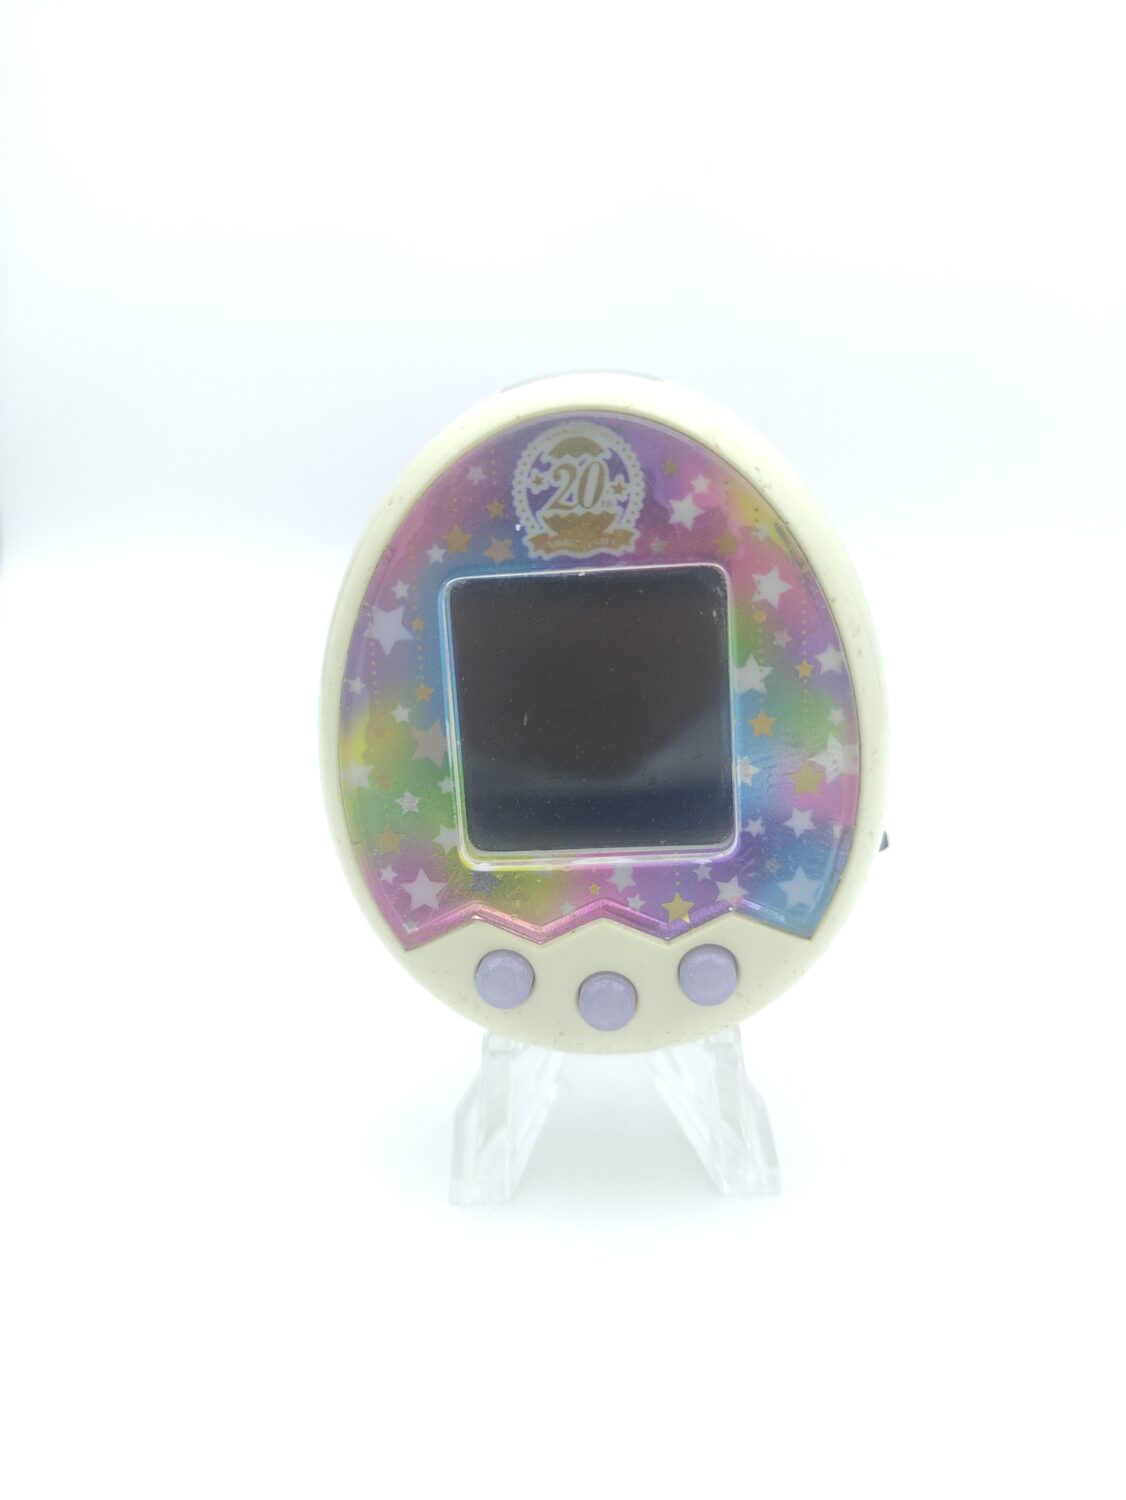 Bandai Tamagotchi m!x mix Color 20th Royal White virtual pet - Buy